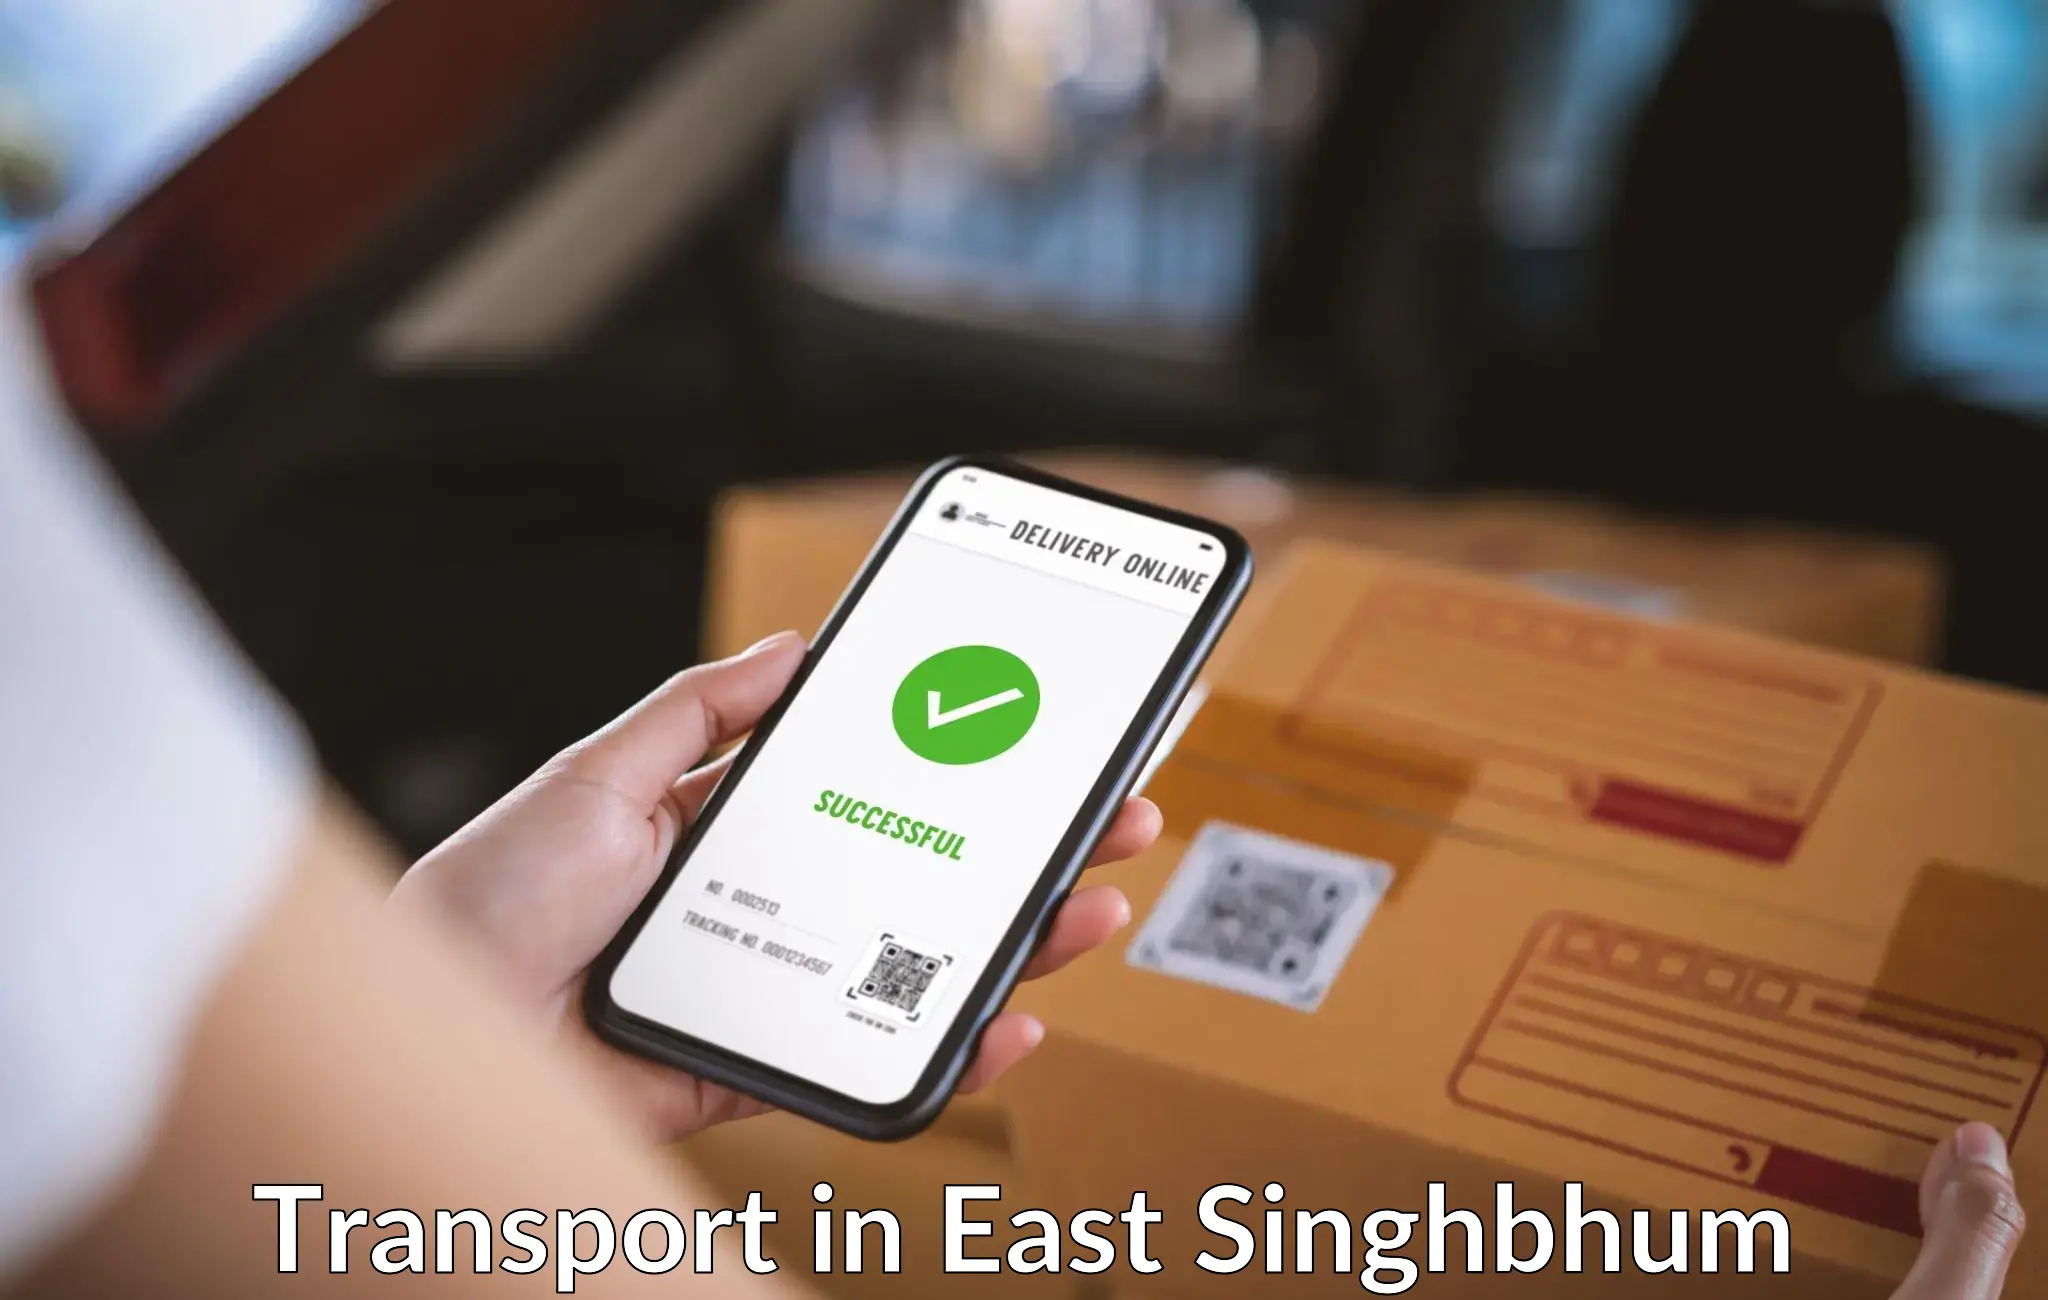 Nearest transport service in East Singhbhum